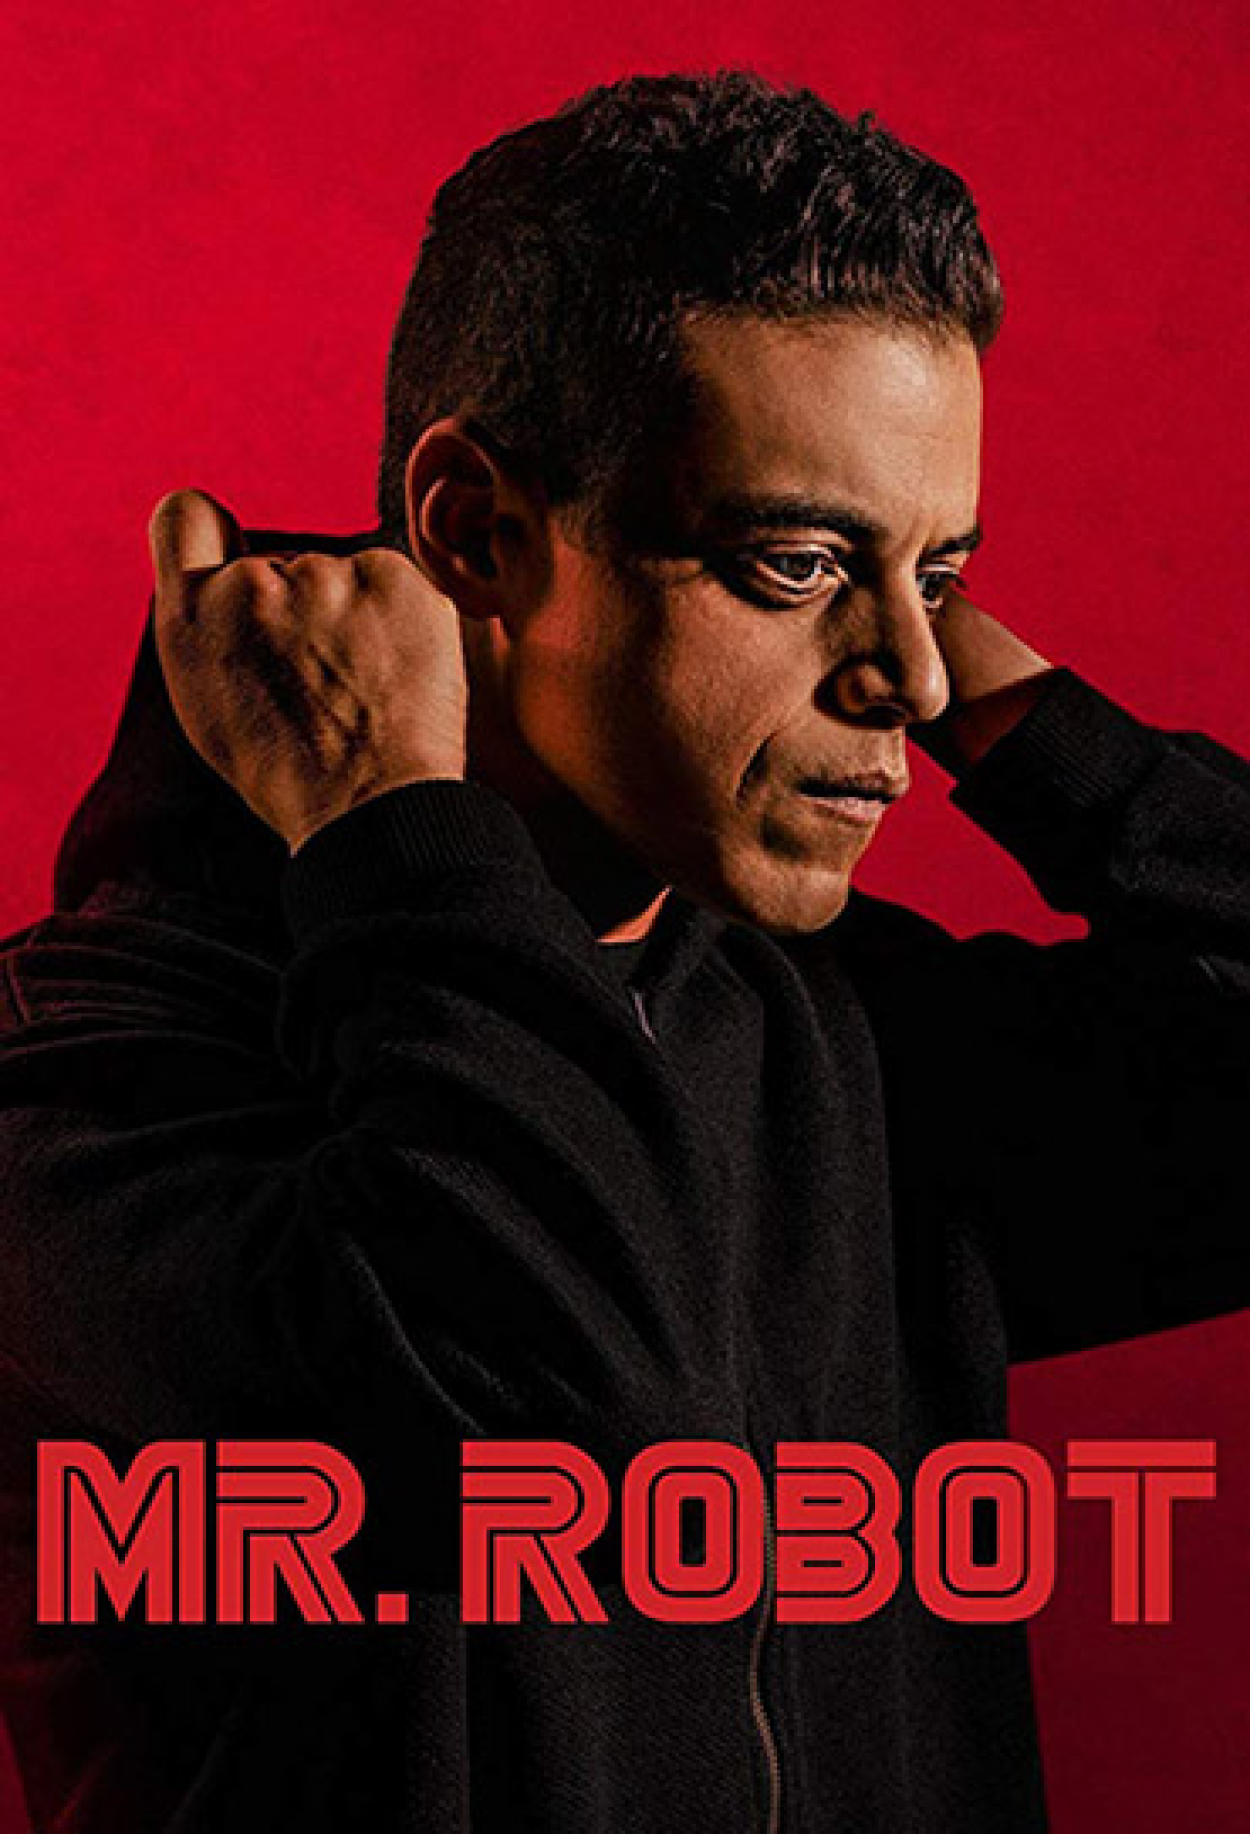 Elétrico e atual, drama sobre hackers 'Mr. Robot' é estreia do ano (por  ora) - NA TV (OU INTERNET) - Globo de Ouro